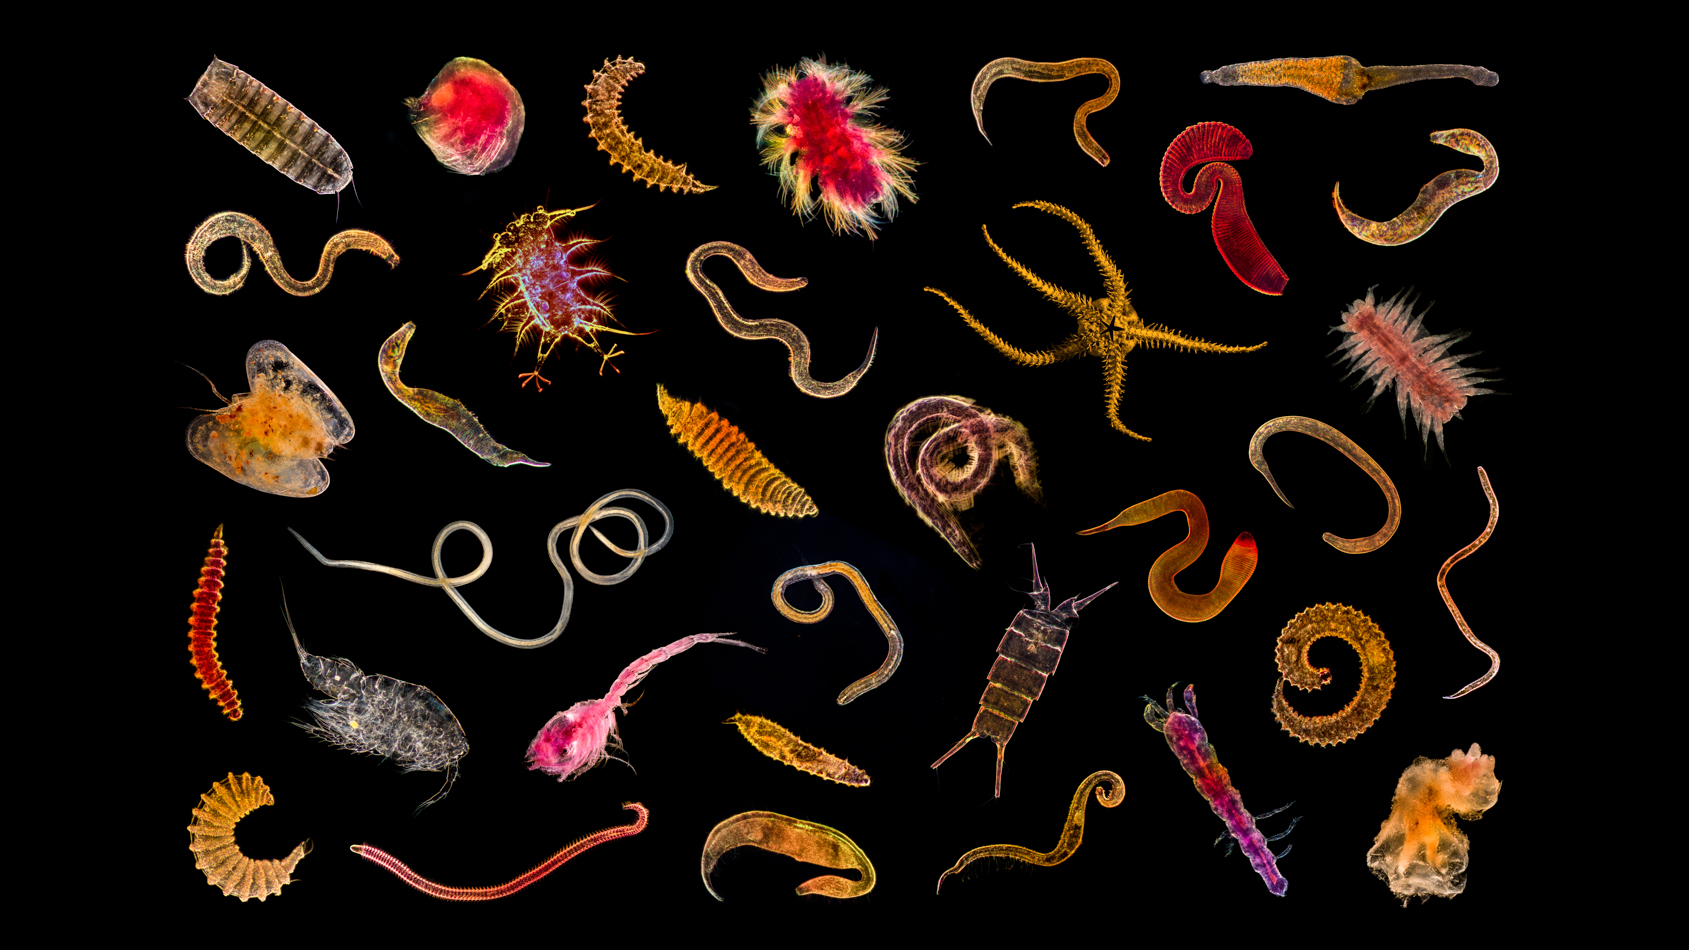 Vue d&#039;ensemble de la petite faune abyssale (nématodes, polychètes, ostracodes, copépodes, kinorhynches). Microscope optique. © Gilles Martin / Ifremer